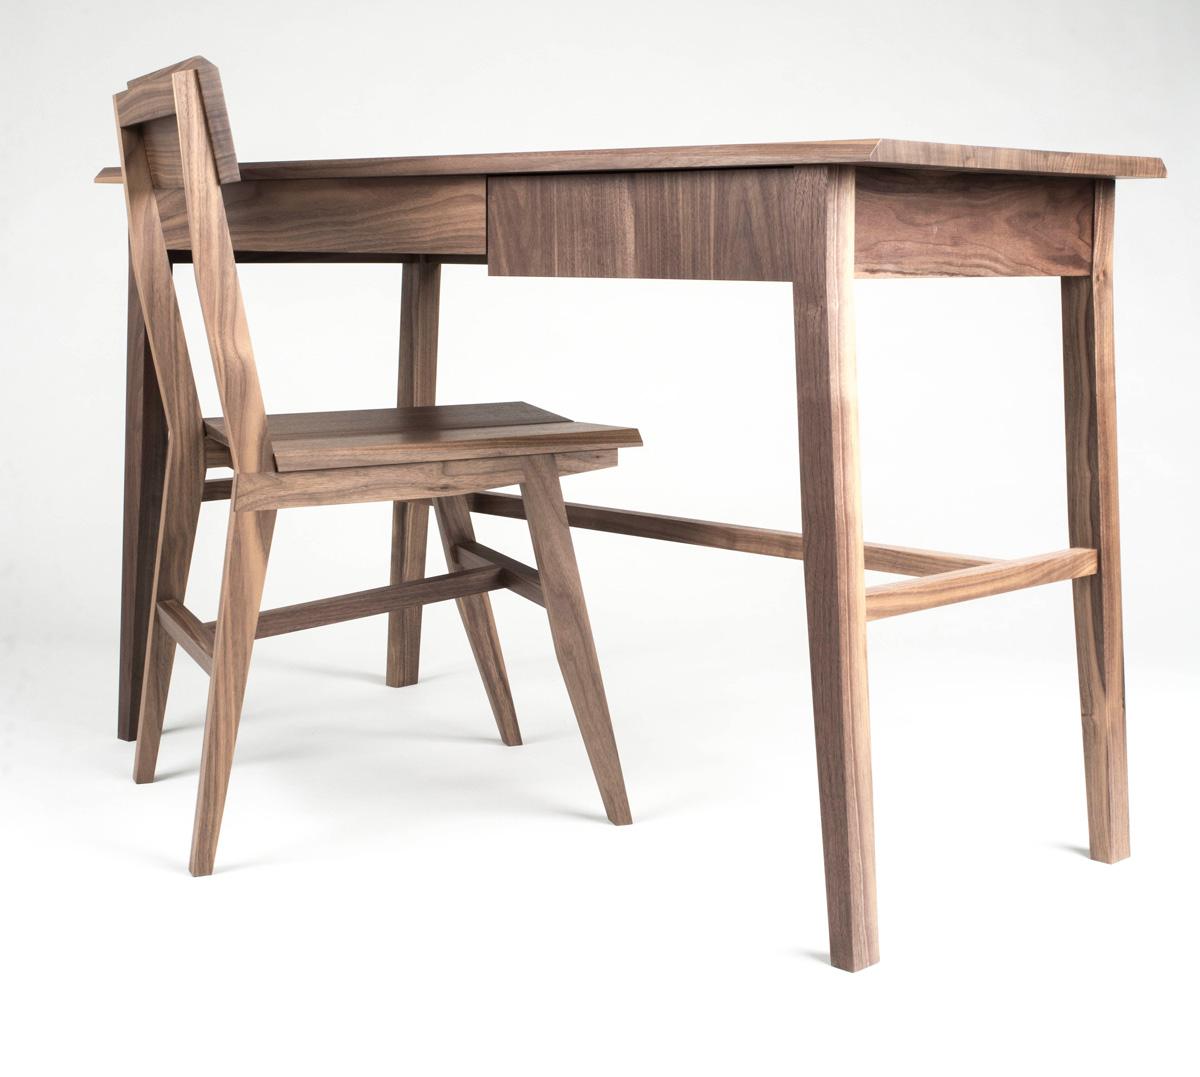 Moderner Rift-Schreibtisch aus Hartholz. Unsere Schreibtisch-Stuhl-Kombination ist nach wie vor das beliebteste Paar, das wir herstellen. Zeitlose Linien und dezente Verjüngungen machen diesen Schreibtisch zu einem Schmuckstück für jedes Heimbüro.